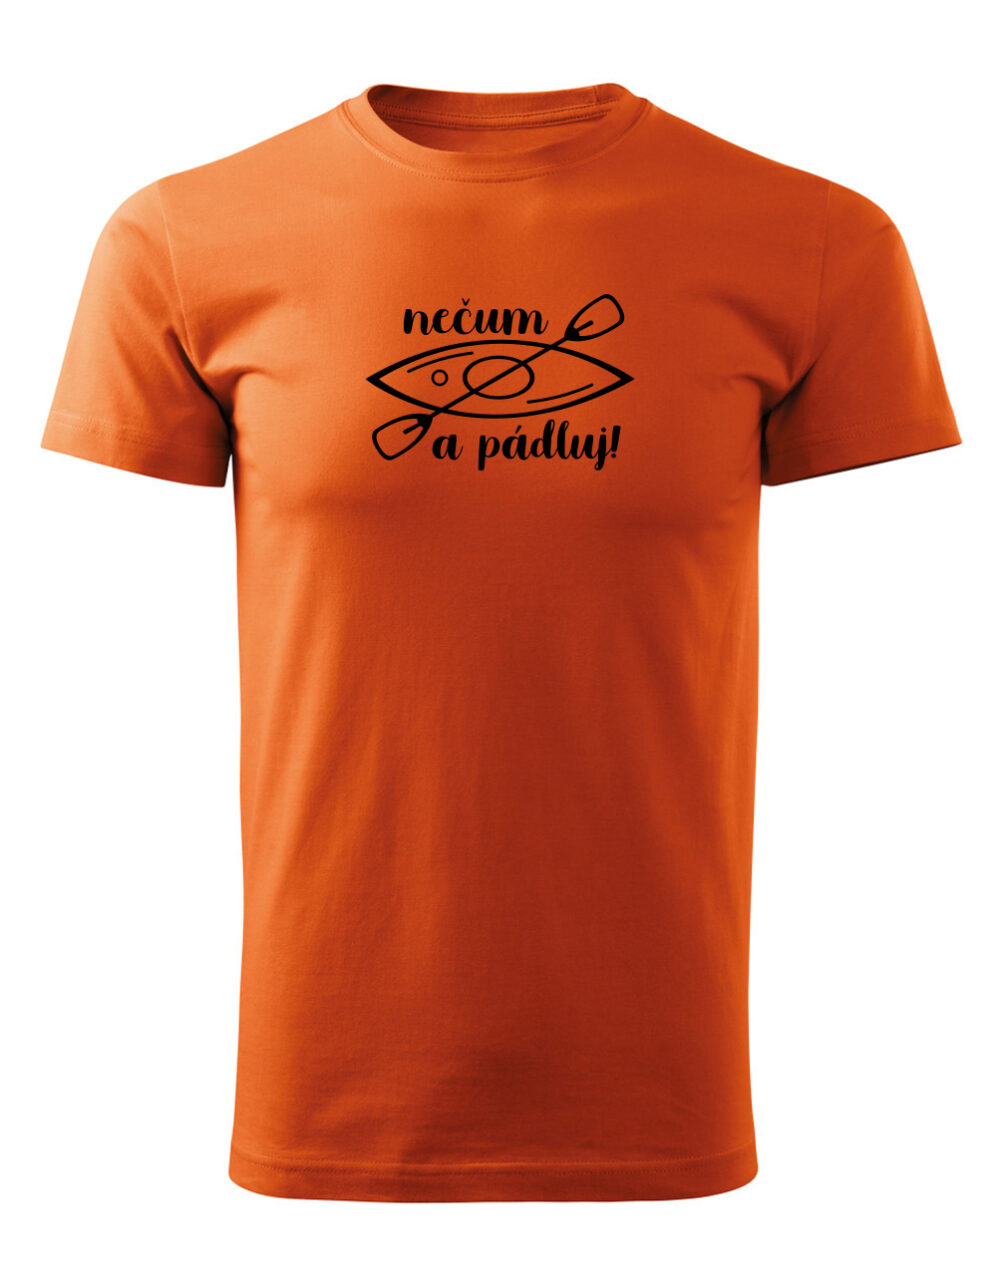 Pánské tričko s potiskem Nečum a pádluj oranžová